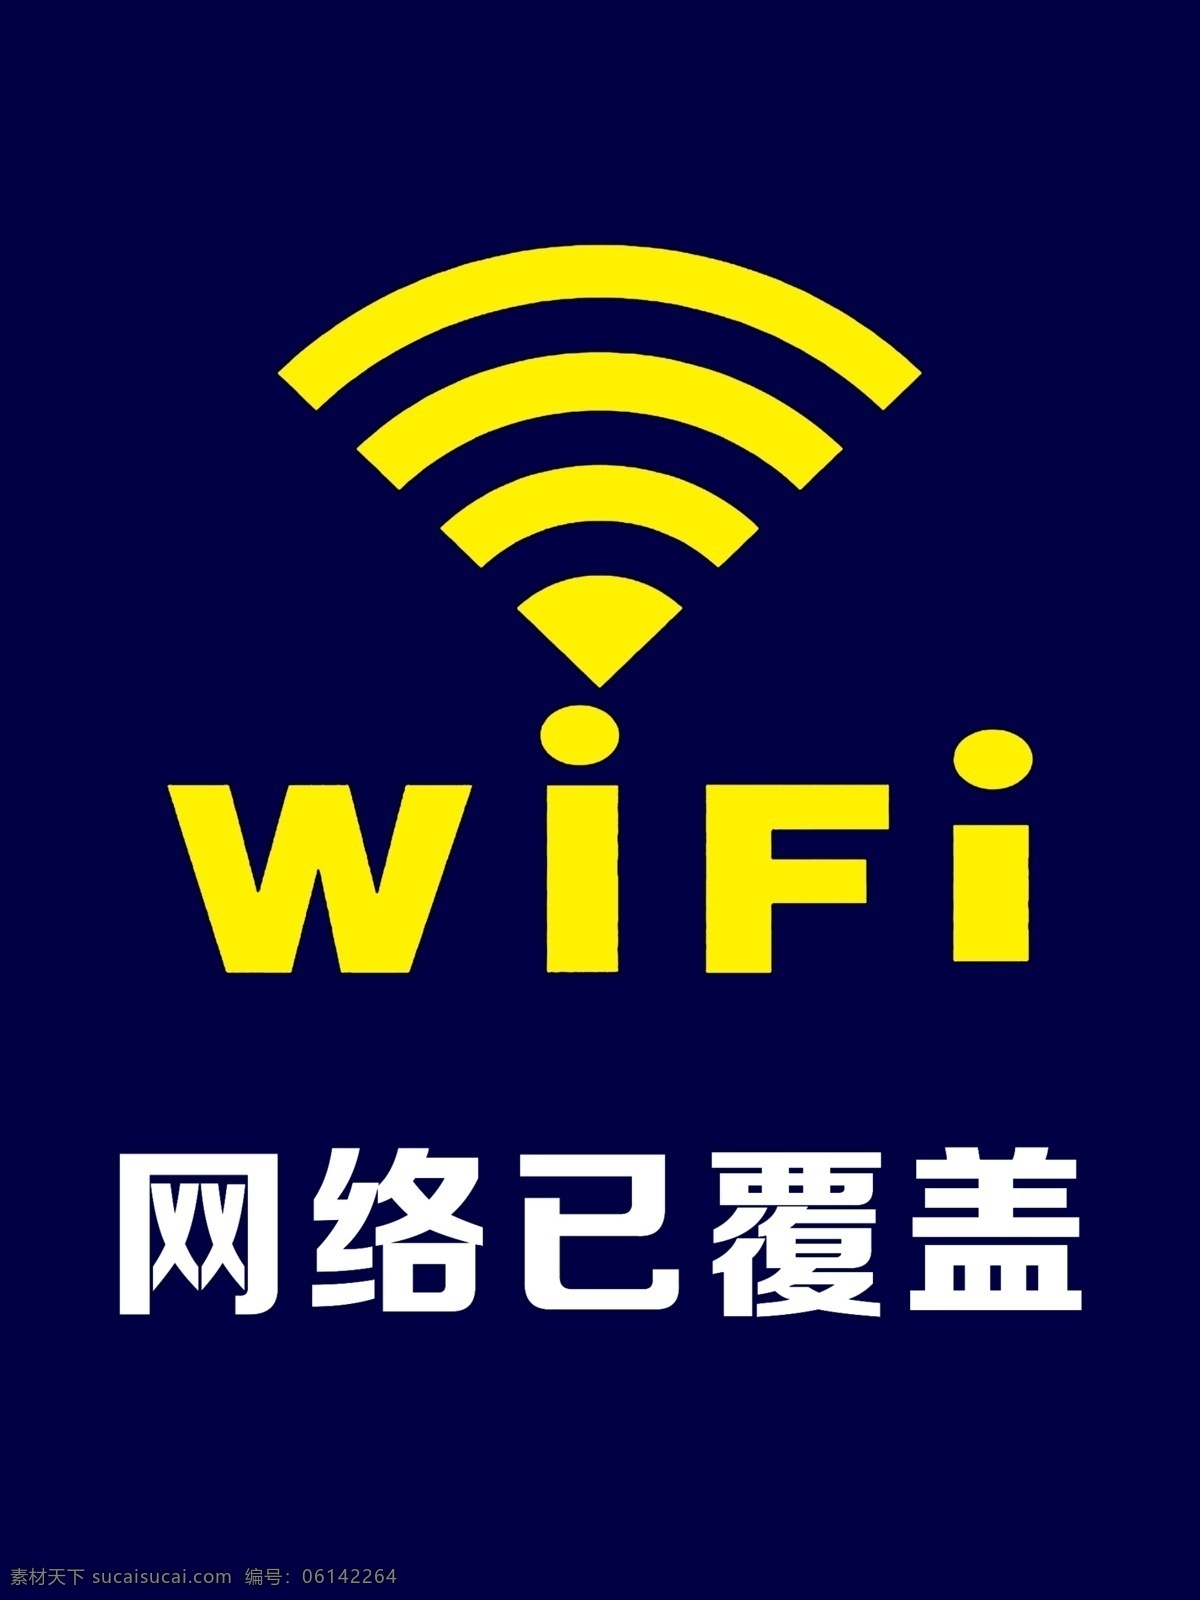 wifi图标 wifi wifi标志 wifi设计 小 图标 wifi网络 wifi图案 wifi图片 我的wifi wifi开放 免费wifi 网络 标志 免费 办公图标 公共wifi